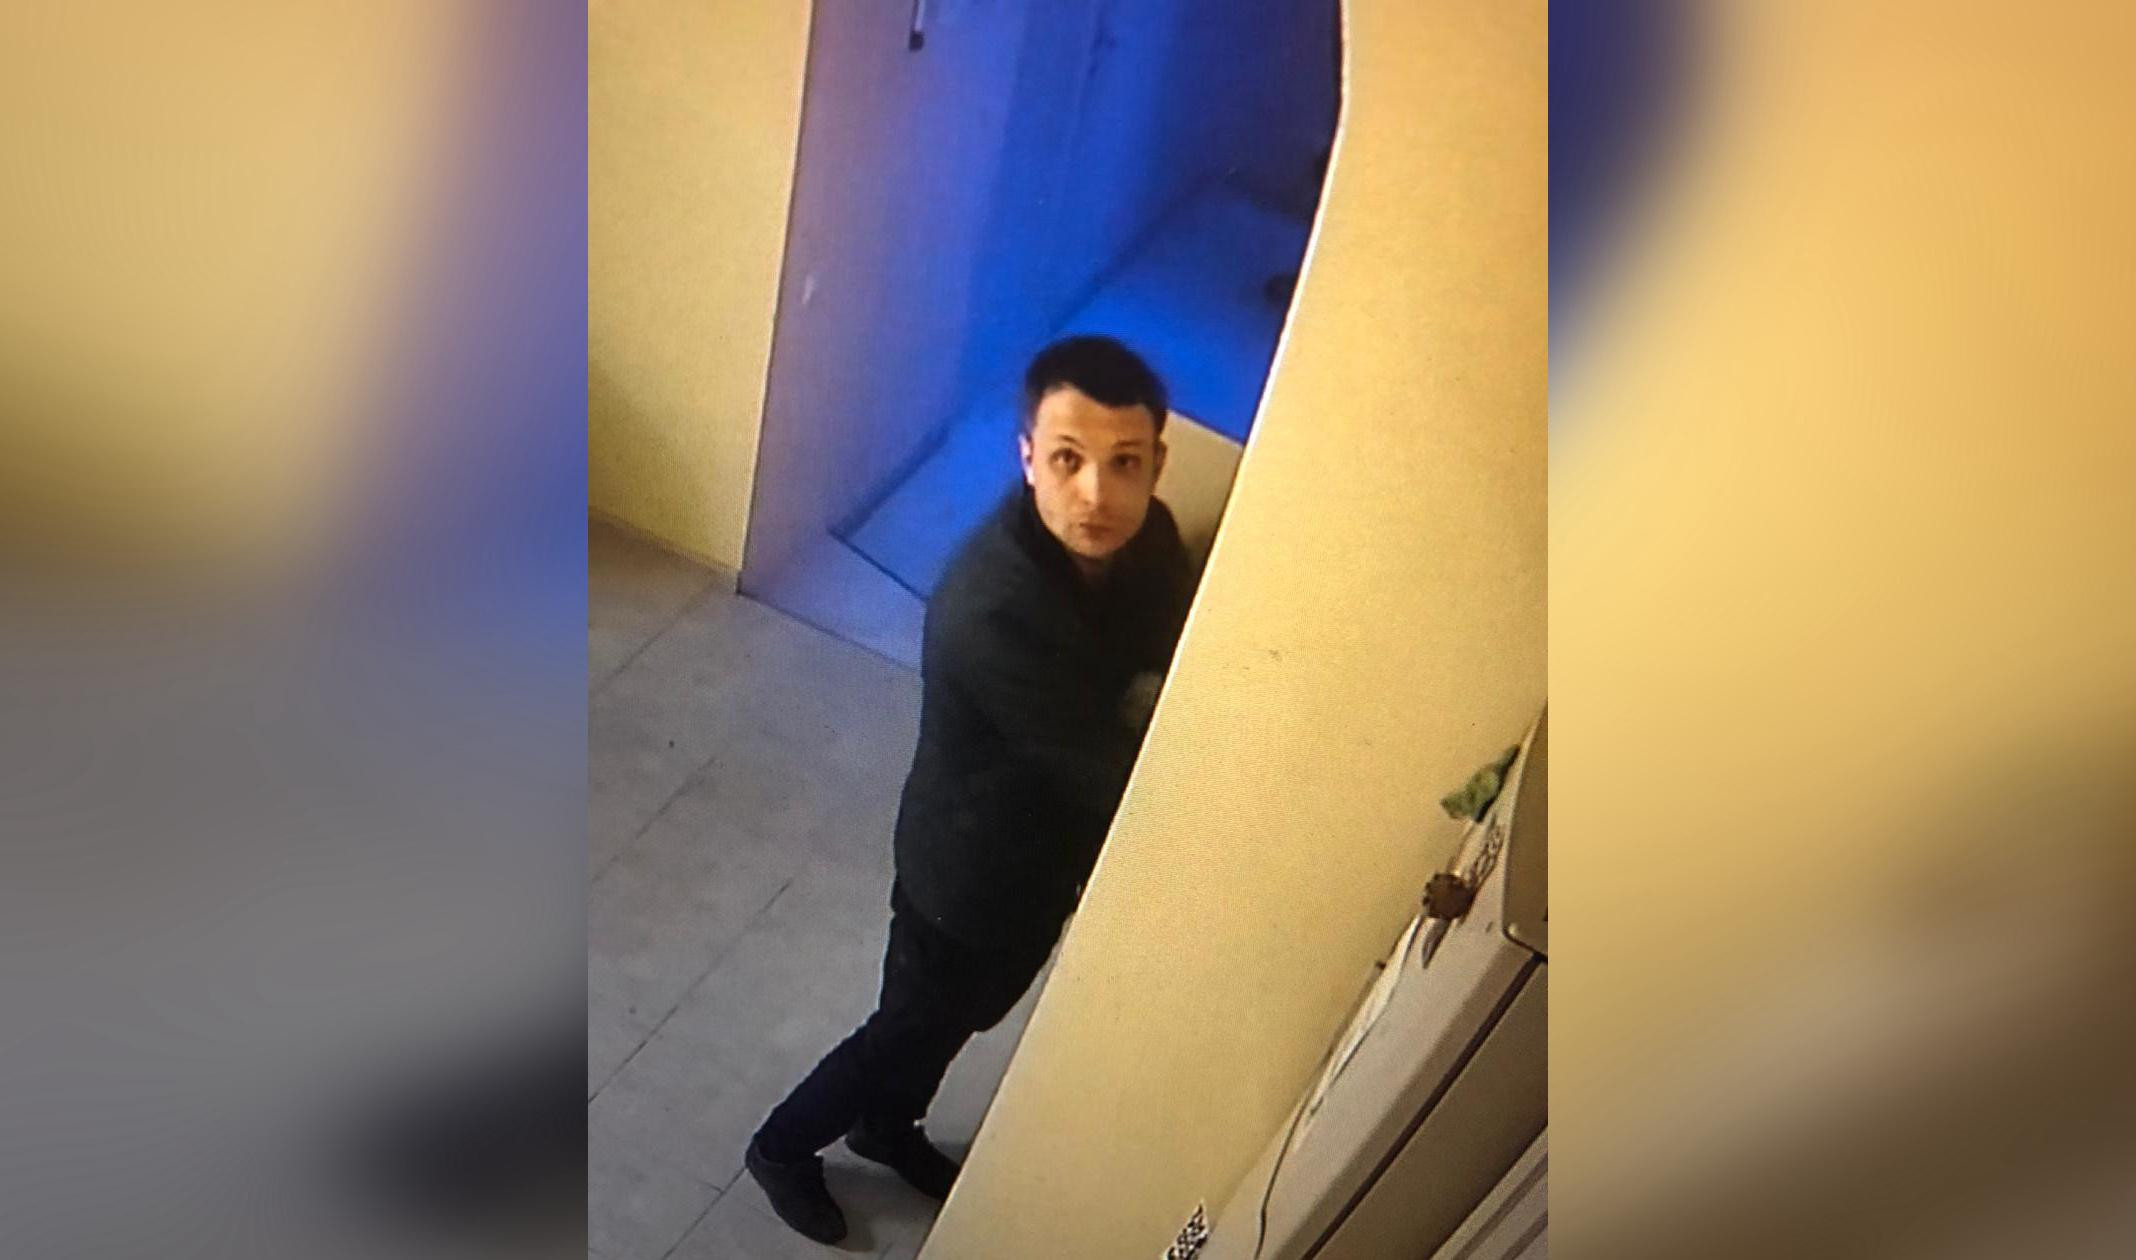 Поймал дома воровку. Квартирного воришку поймали. В квартире ограбили людей. Квартирные мошенники в Санкт-Петербурге фото с 2020 года.